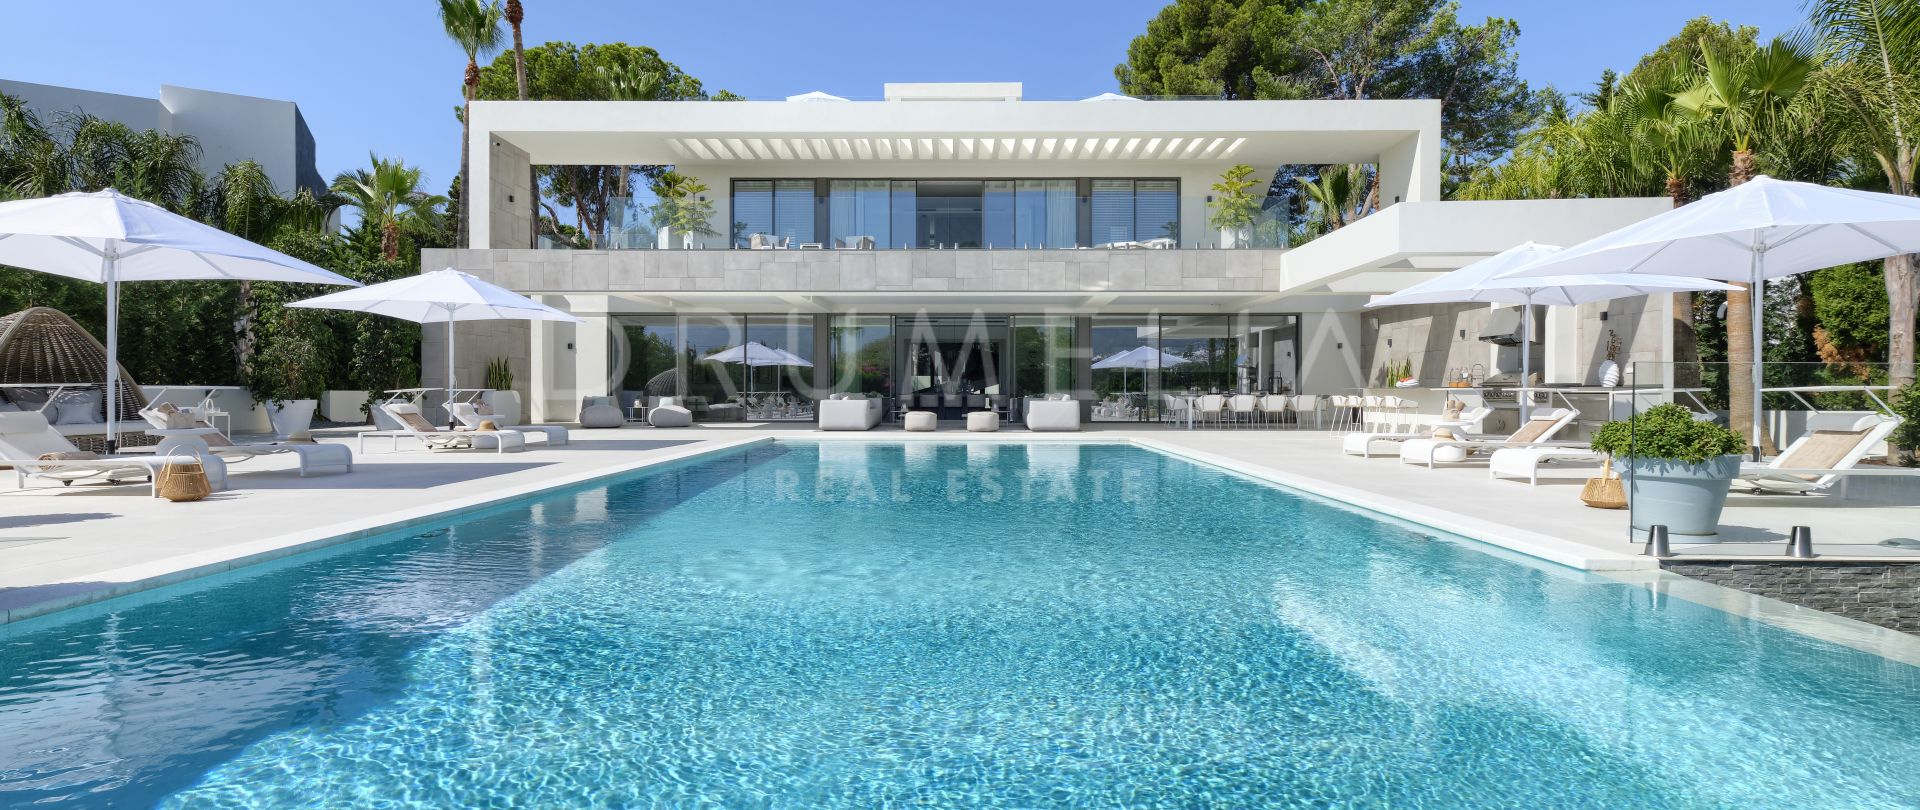 La Villa - Ny stilfull modern lyxvilla vid golfbanan i Nueva Andalucía, Marbella